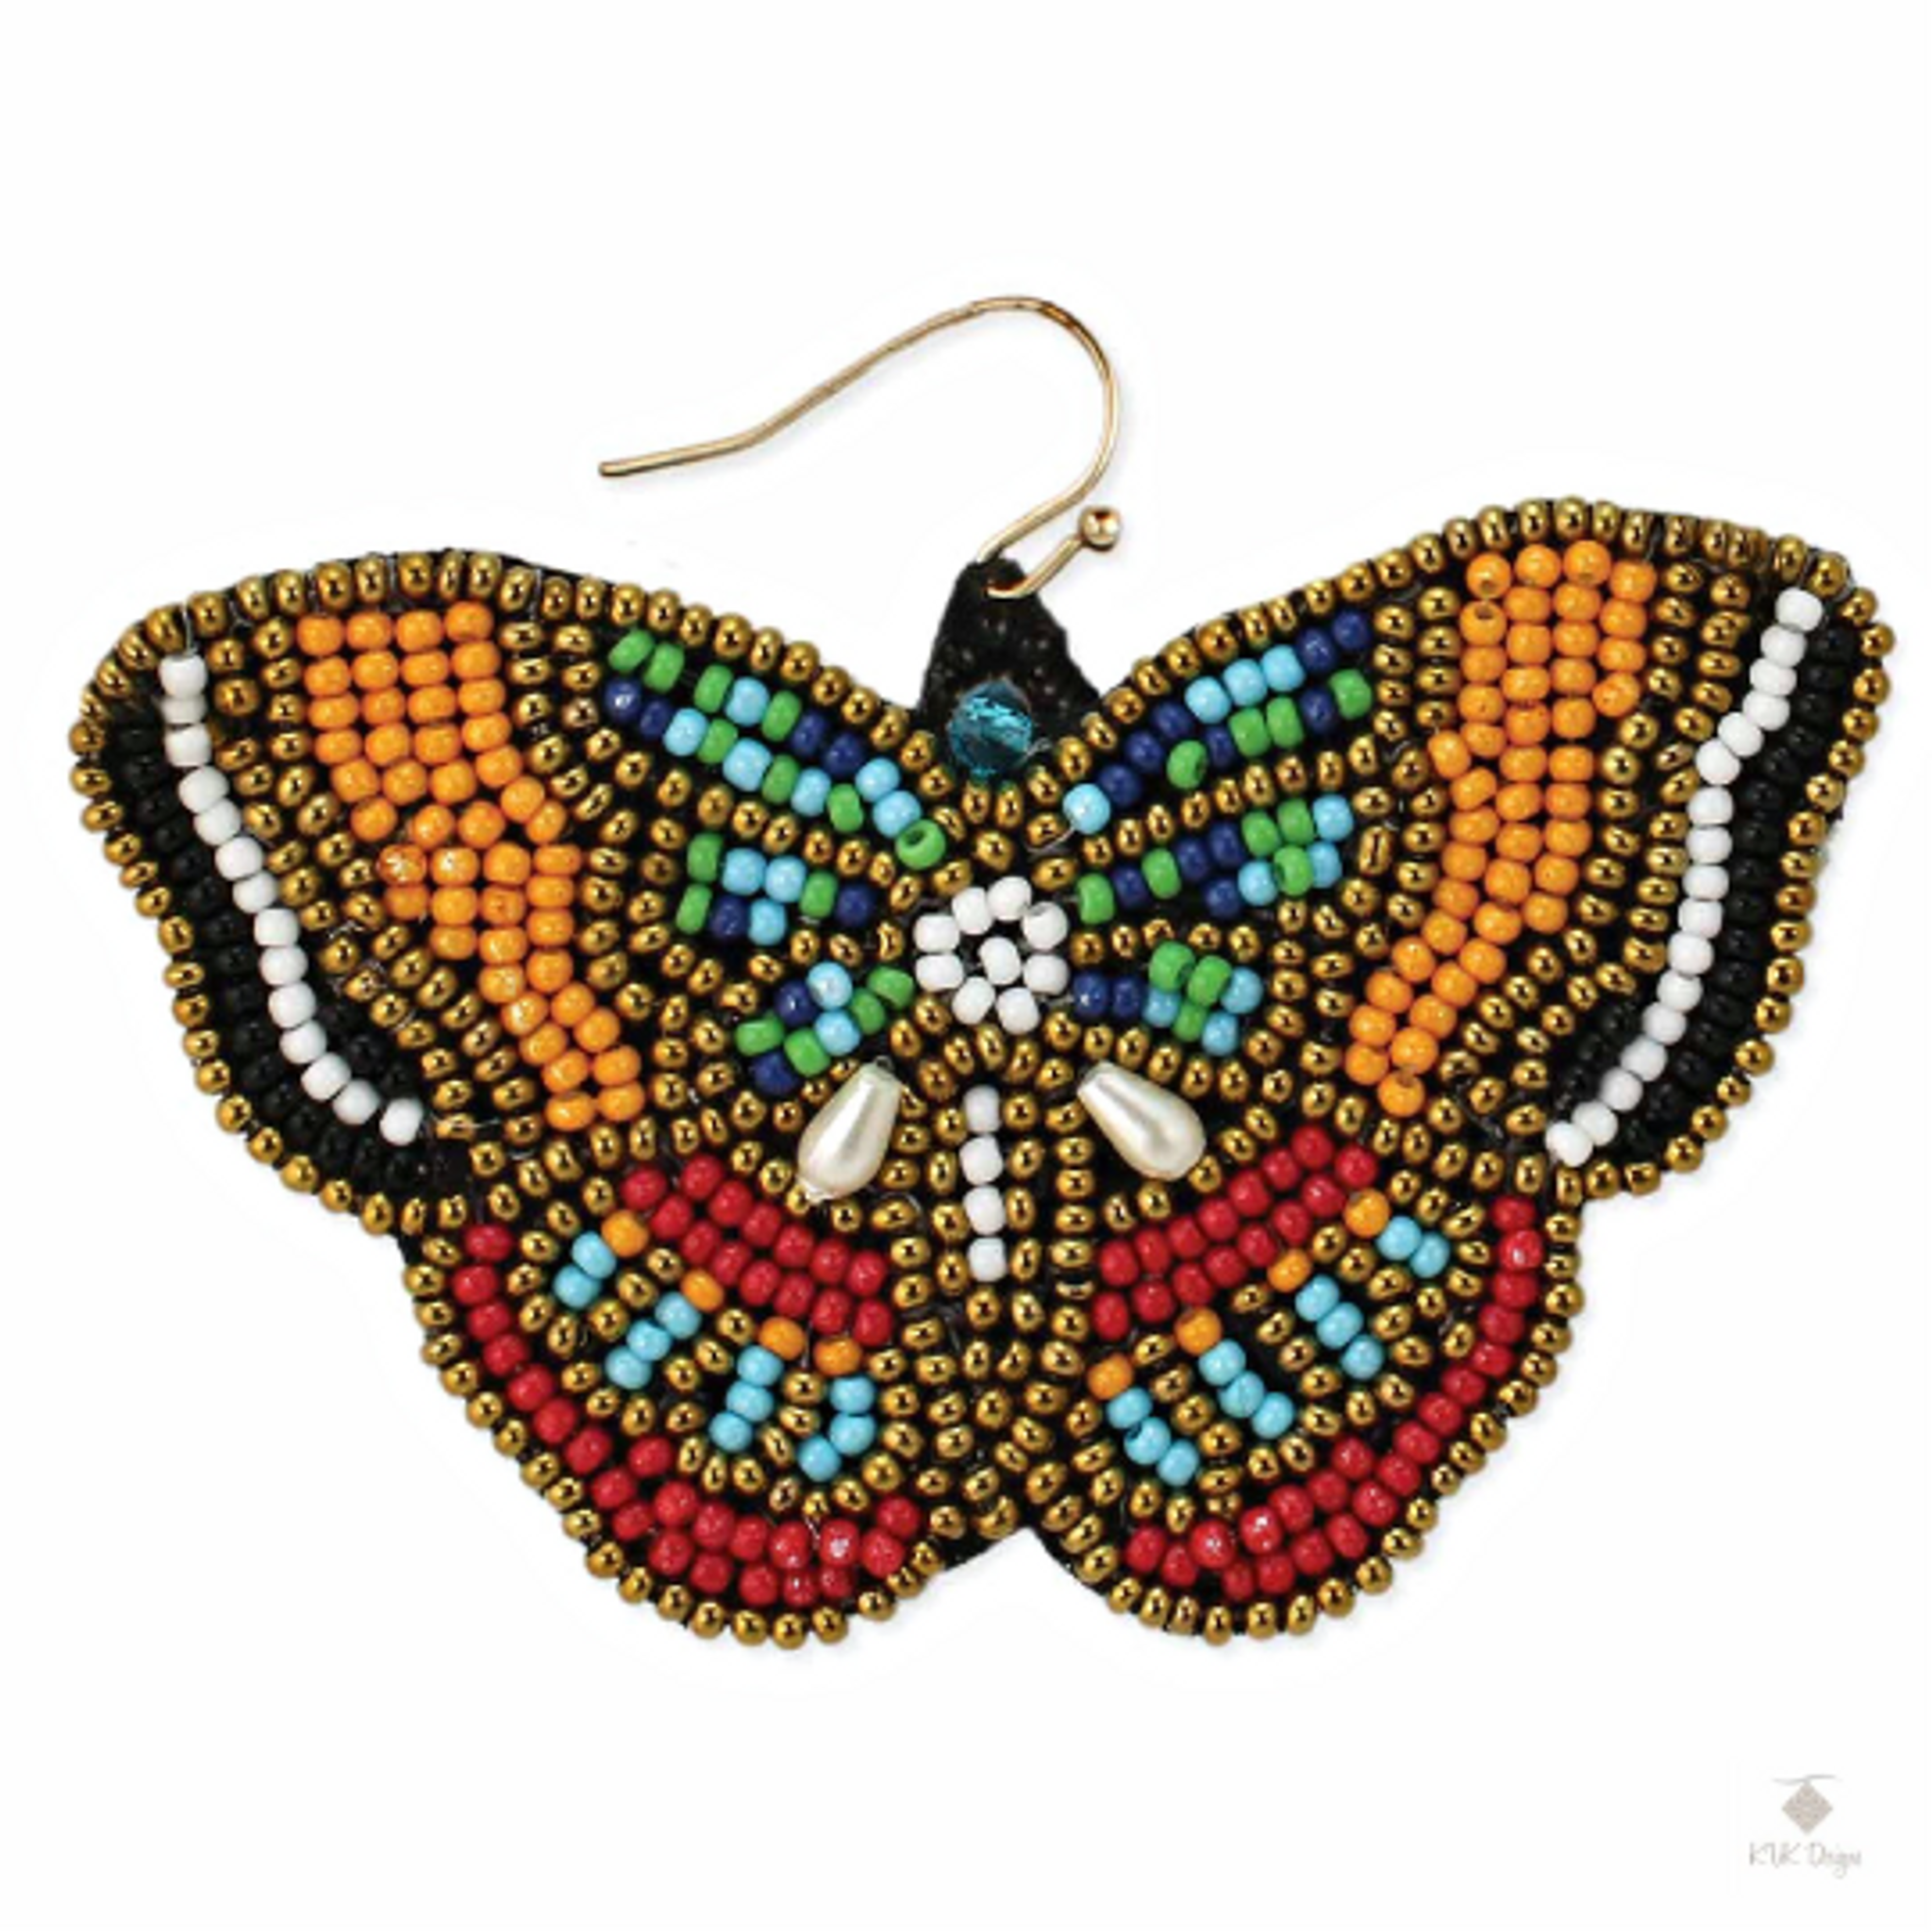 Ykohkofe Cute Butterfly Drop Earrings Colorful Wooden Resin Animal Sweet  Butterfly Earrings Wing Dangle Earring For Women Girls Bohemia Party Ethnic  JewelryEarrings for Women Bow Earrings Hollow 